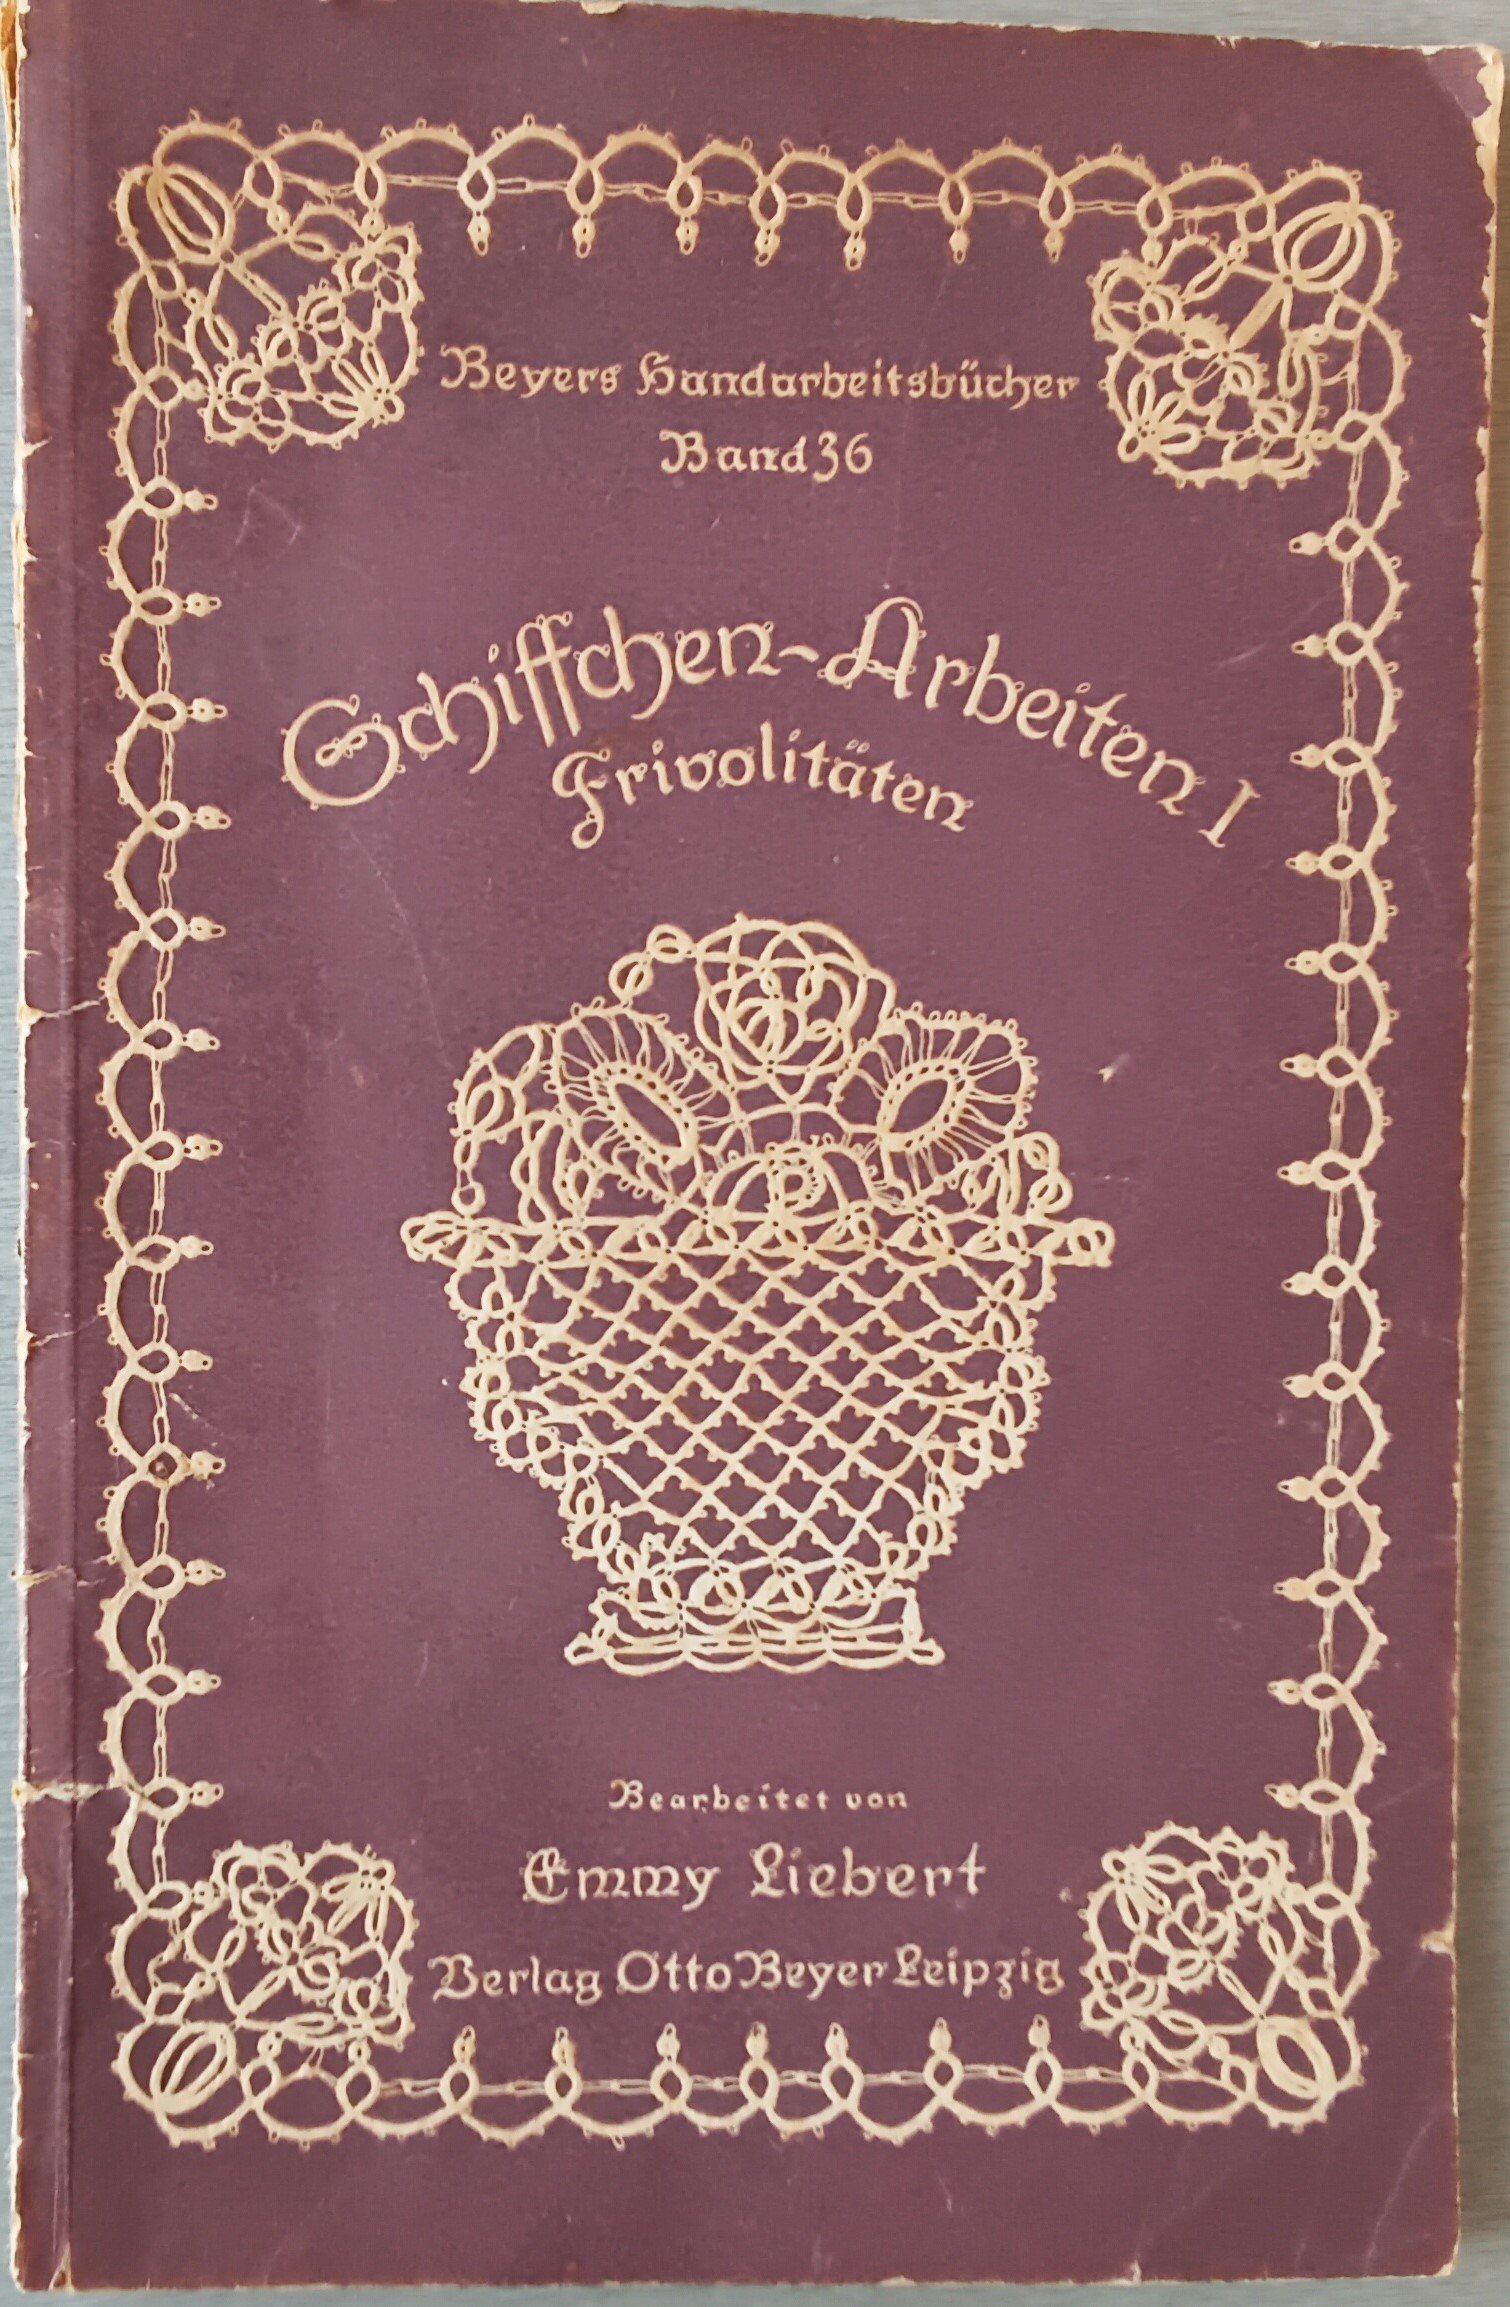 Handarbeitsbuch Schiffchen (Heimatmuseum Aichstetten CC BY-NC-SA)